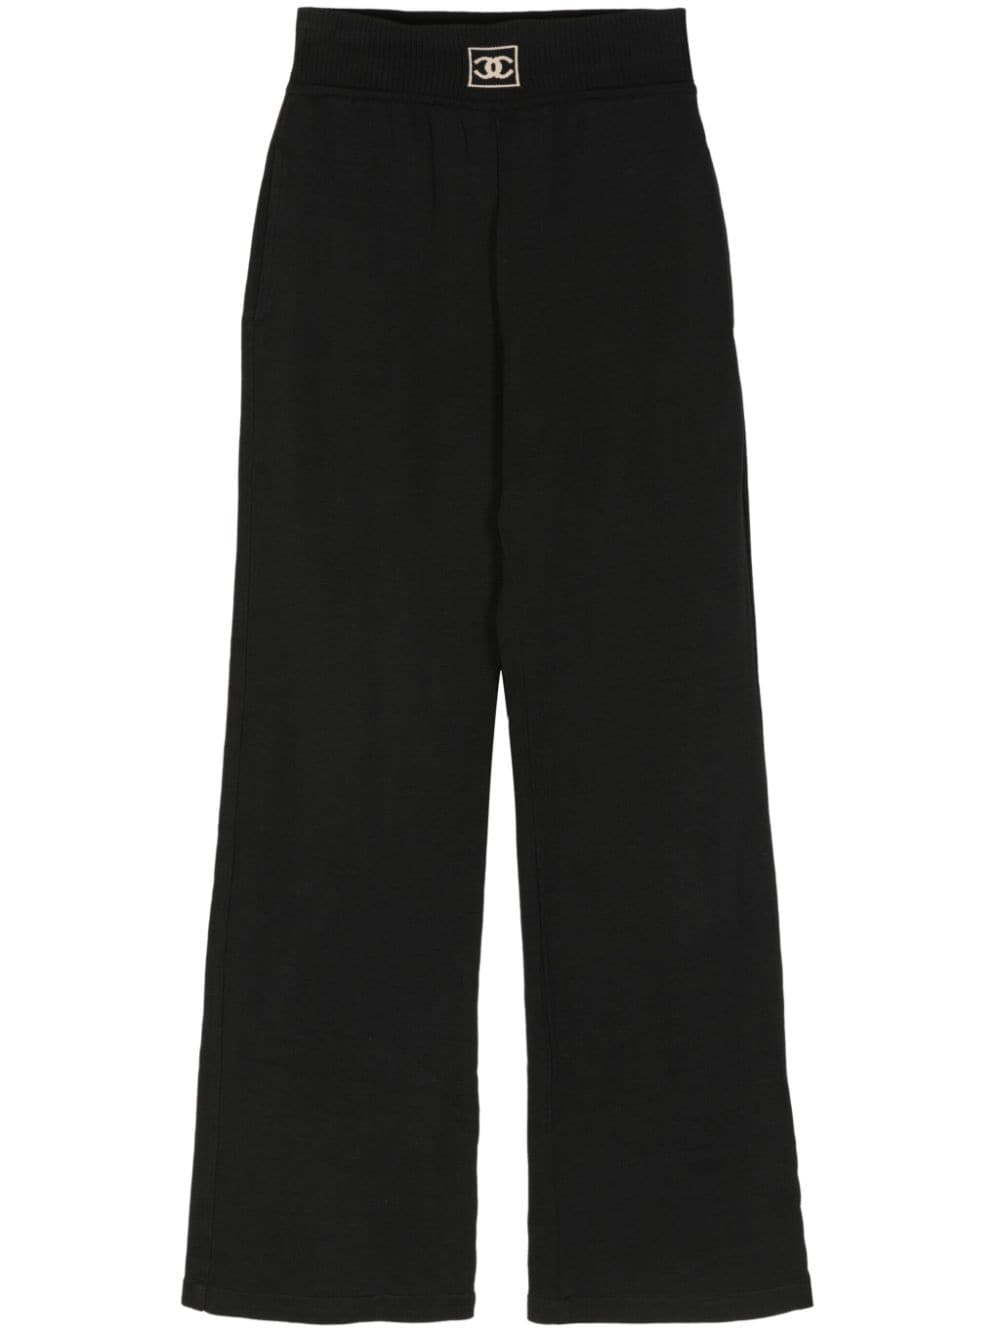 2003 CC cotton wide-leg trousers